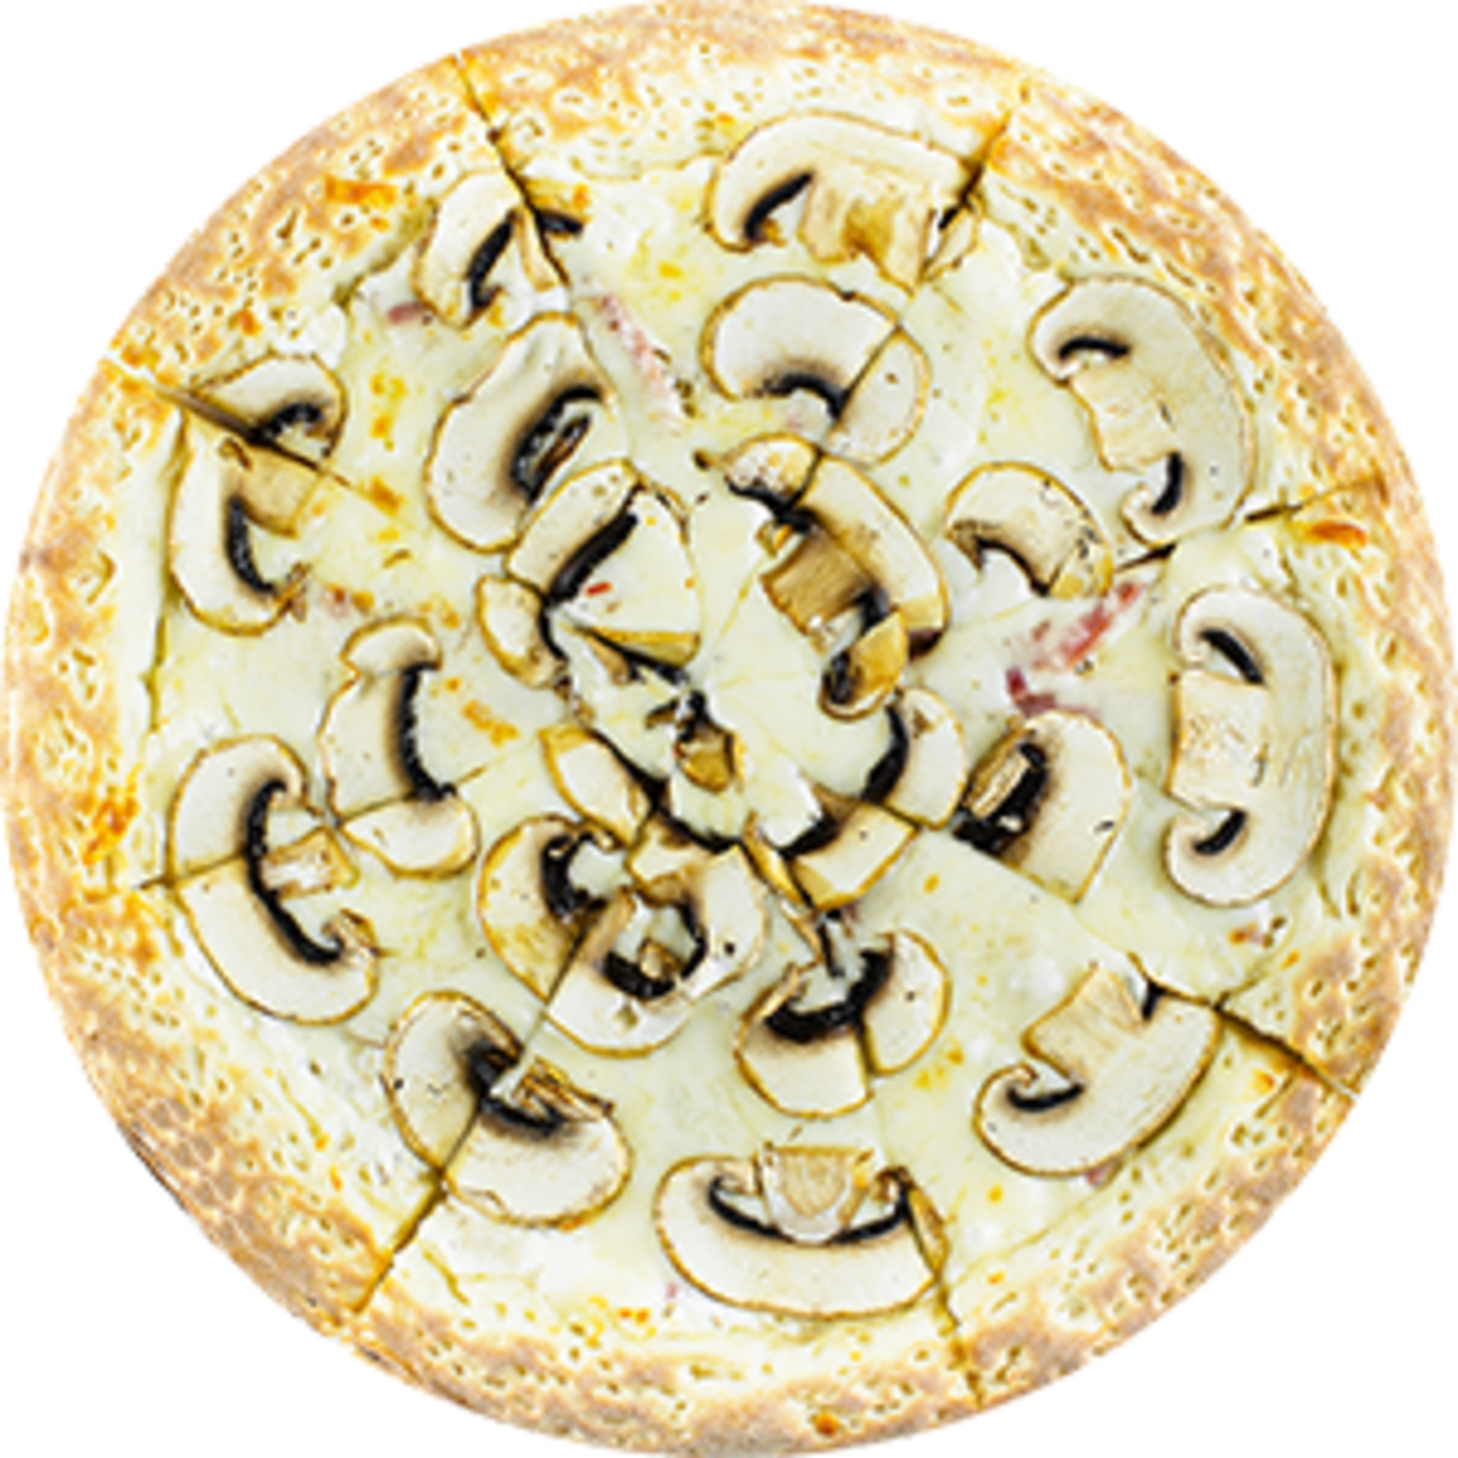 пицца грибная с сливочным соусом фото 40